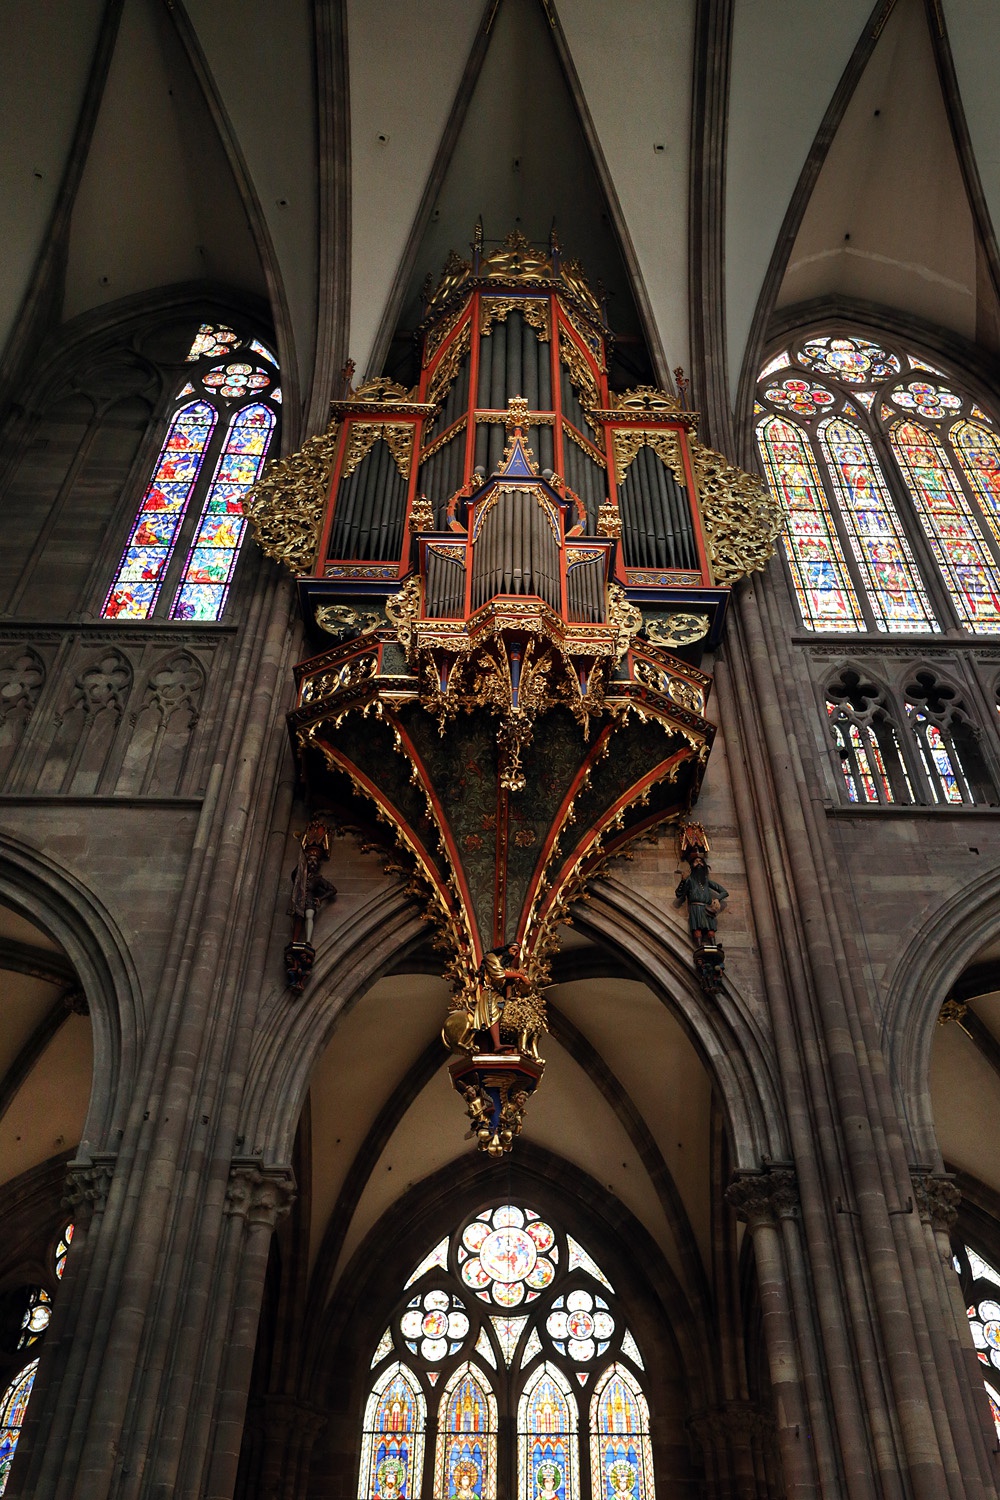 bill-hocker-organ-notre-dame-cathedral-strasbourg-france-2016